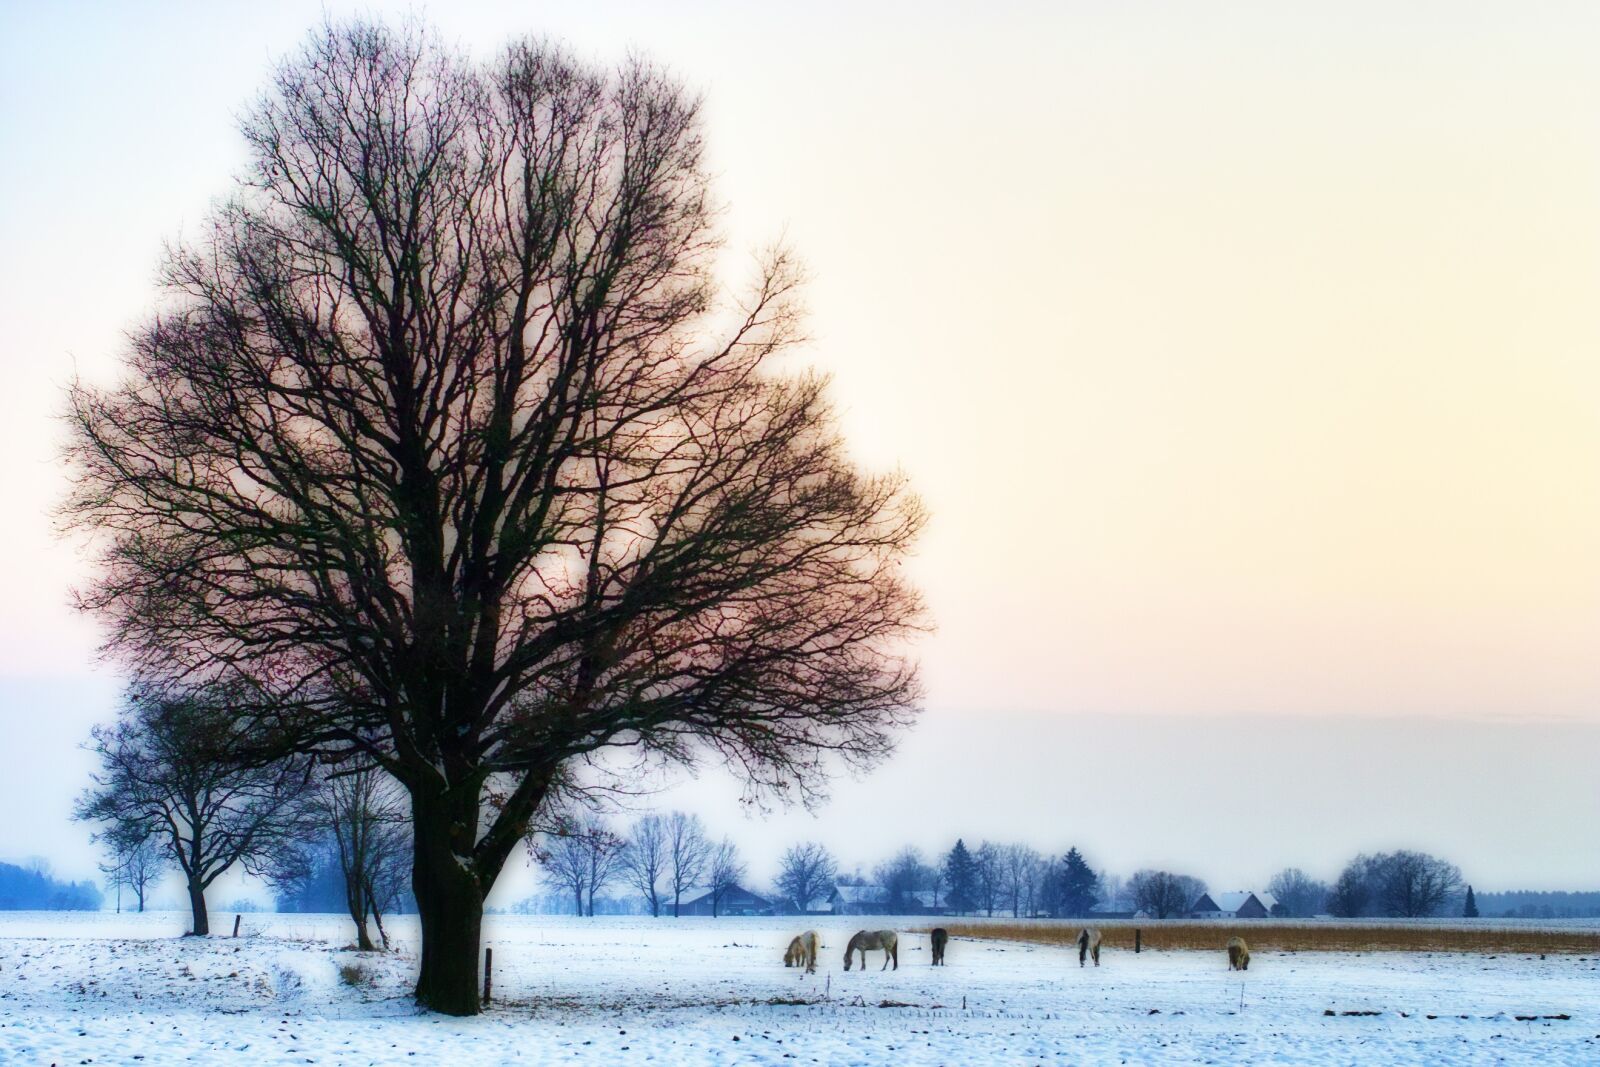 Sigma SD14 sample photo. Tree, winter, horses photography